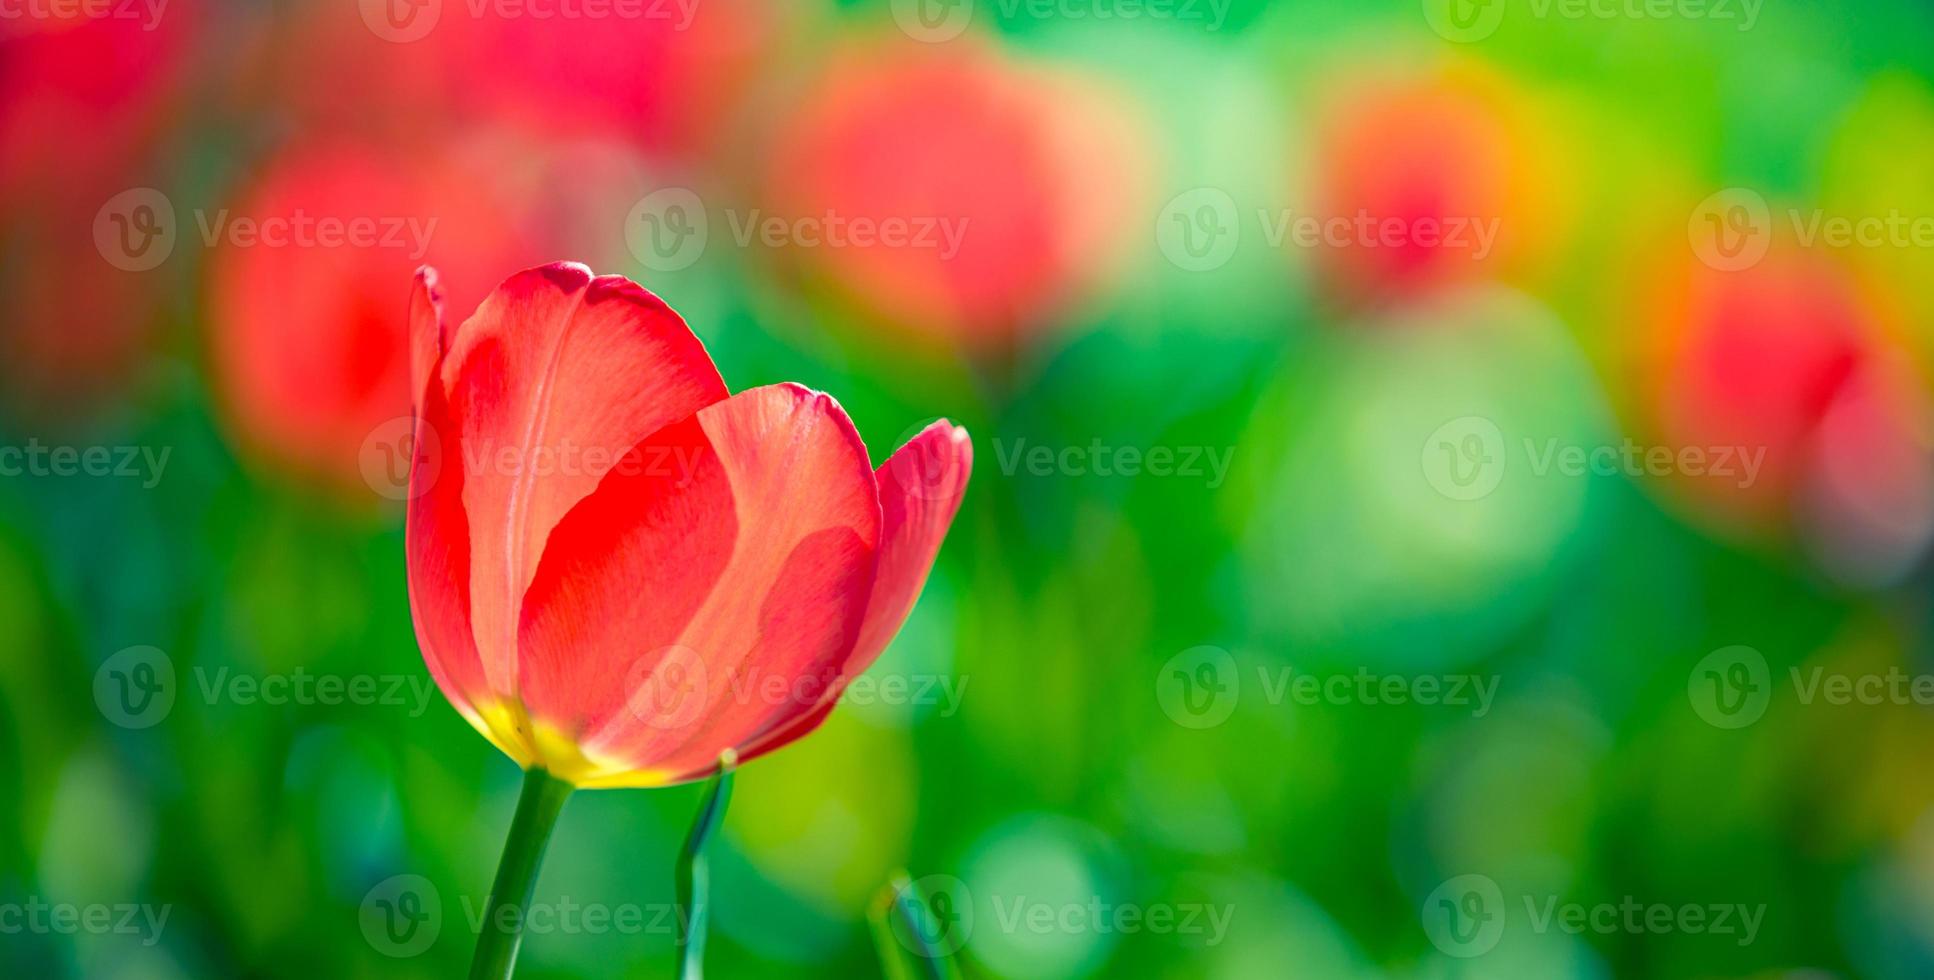 linda tulipa branca vermelha solitária na natureza da primavera para design de cartão e banner web. closeup sereno, idílico romântico amor floral natureza paisagem. folhagem exuberante turva abstrata foto